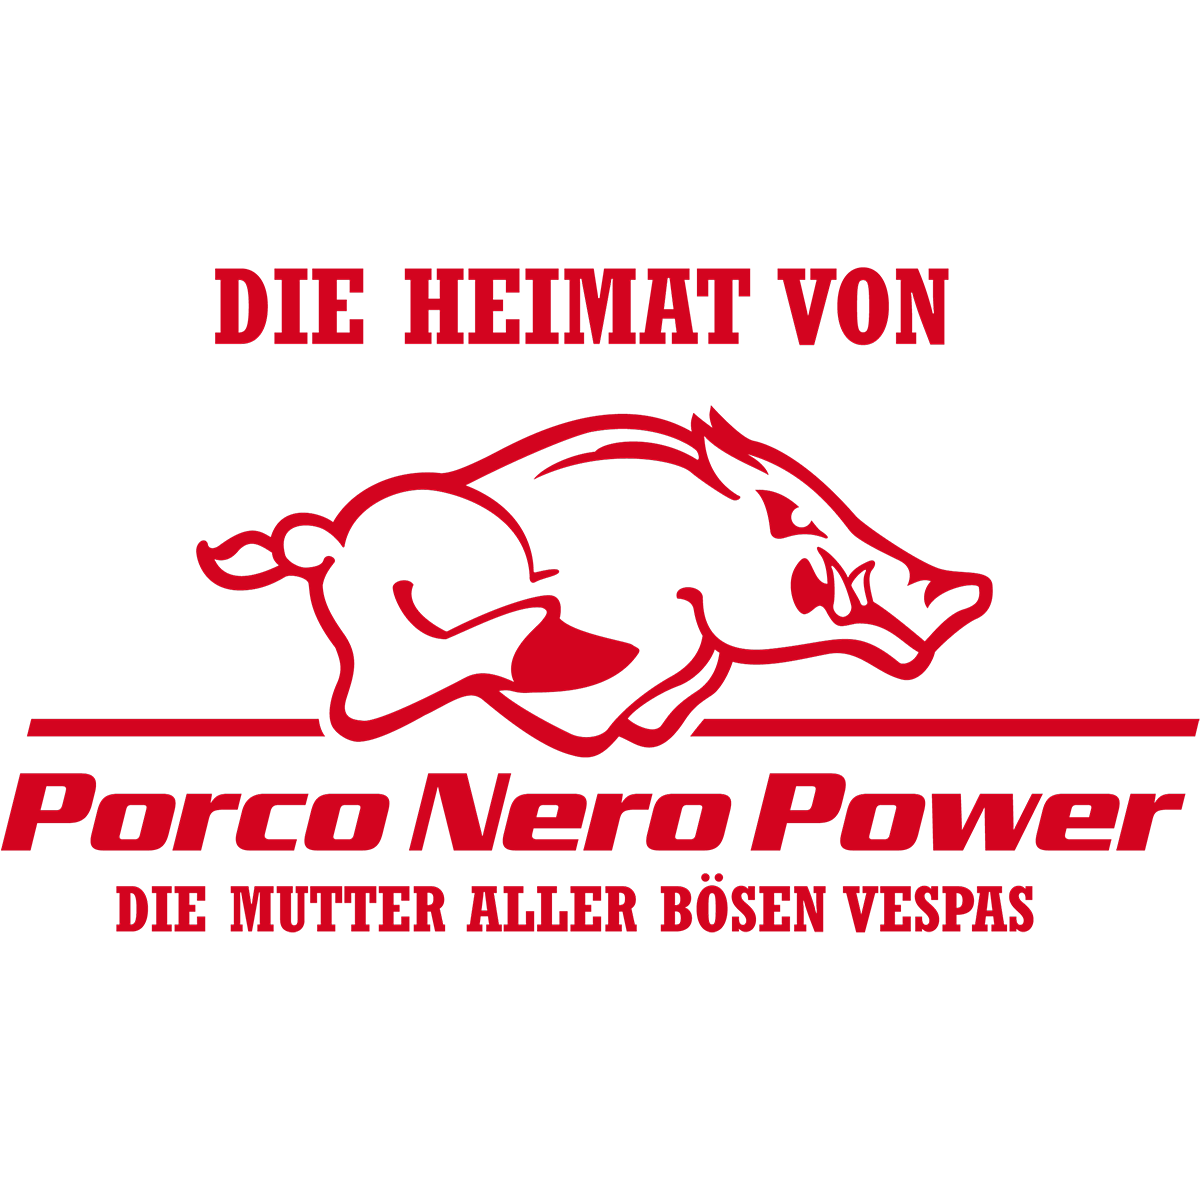 Porco Nero Power Stuttgart Logo